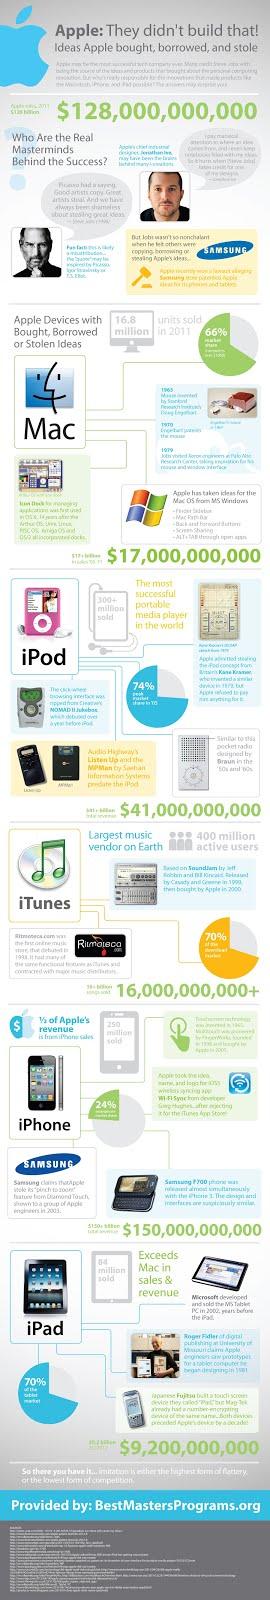 Infographie: Apple n'a pas inventé cela !!